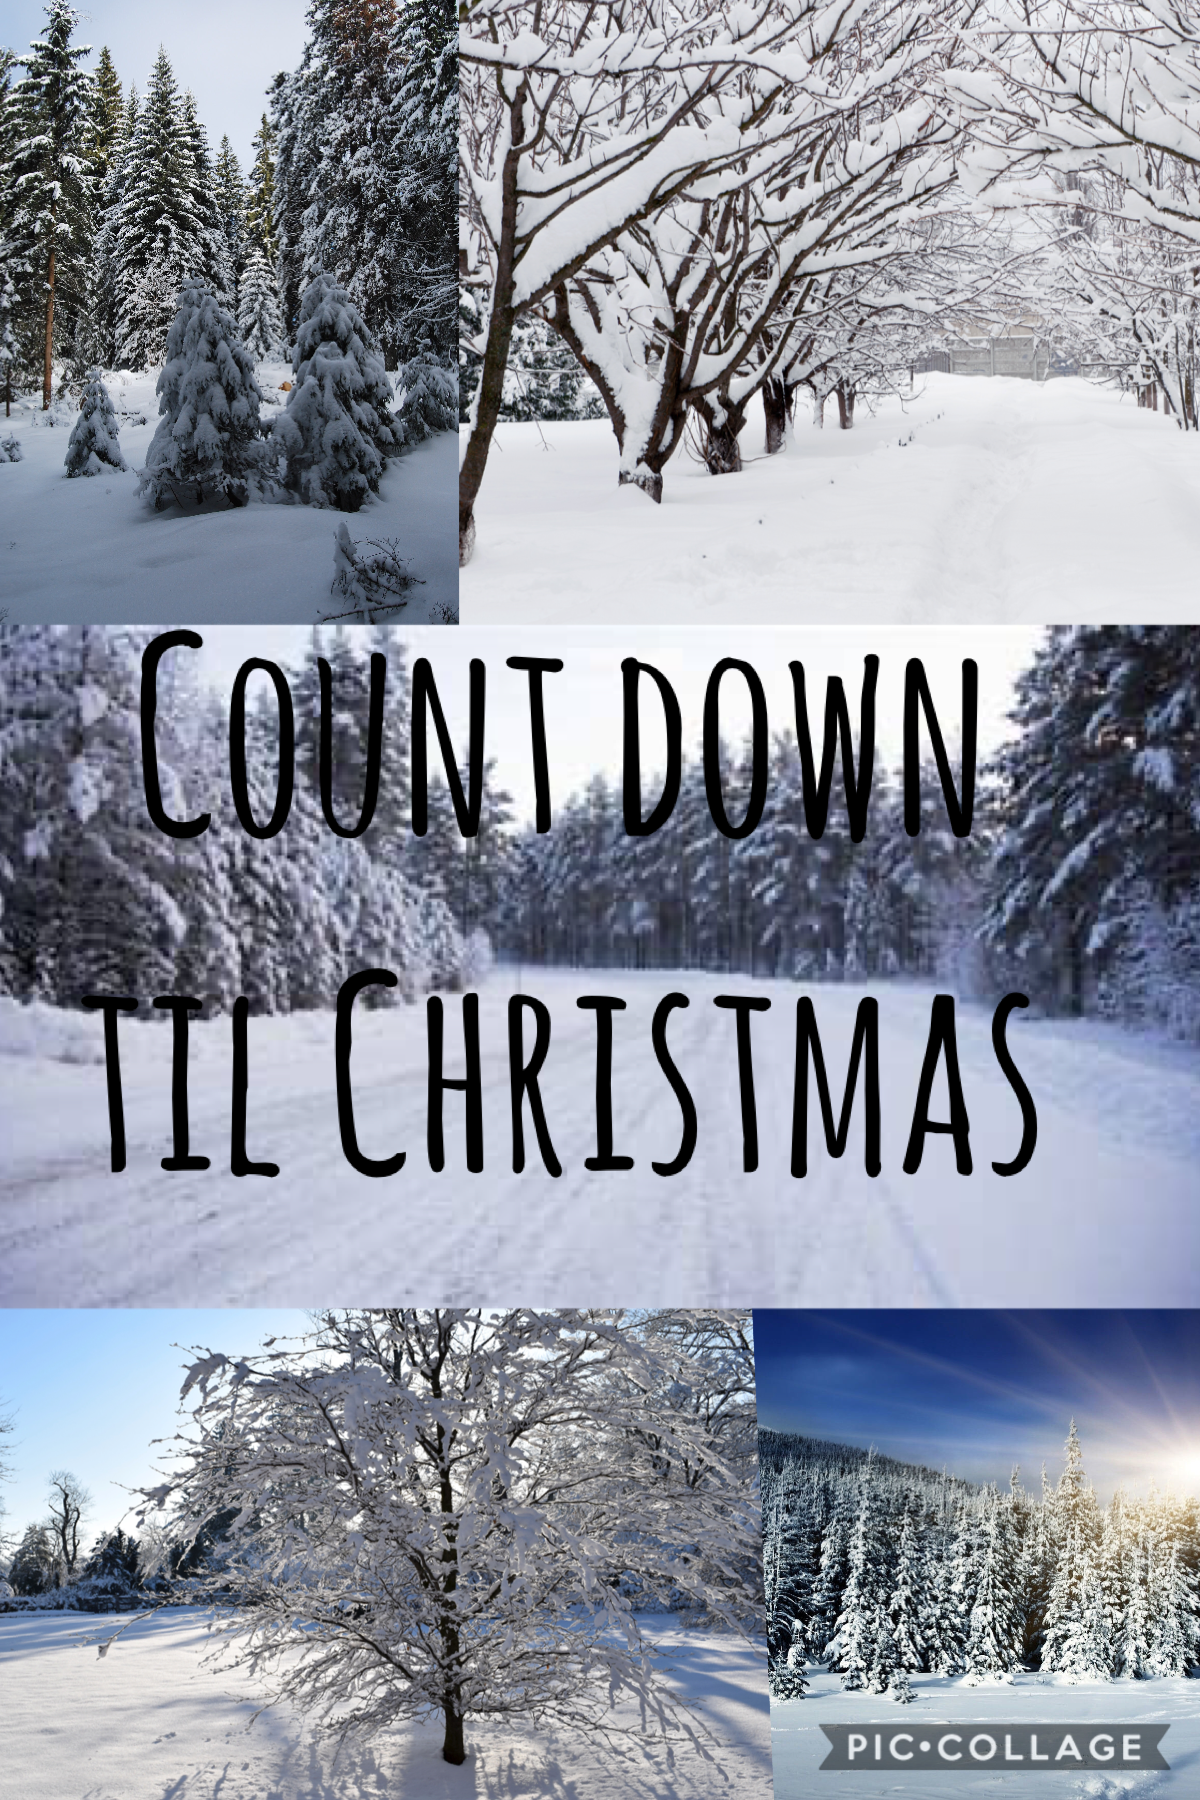 Countdown til Christmas 